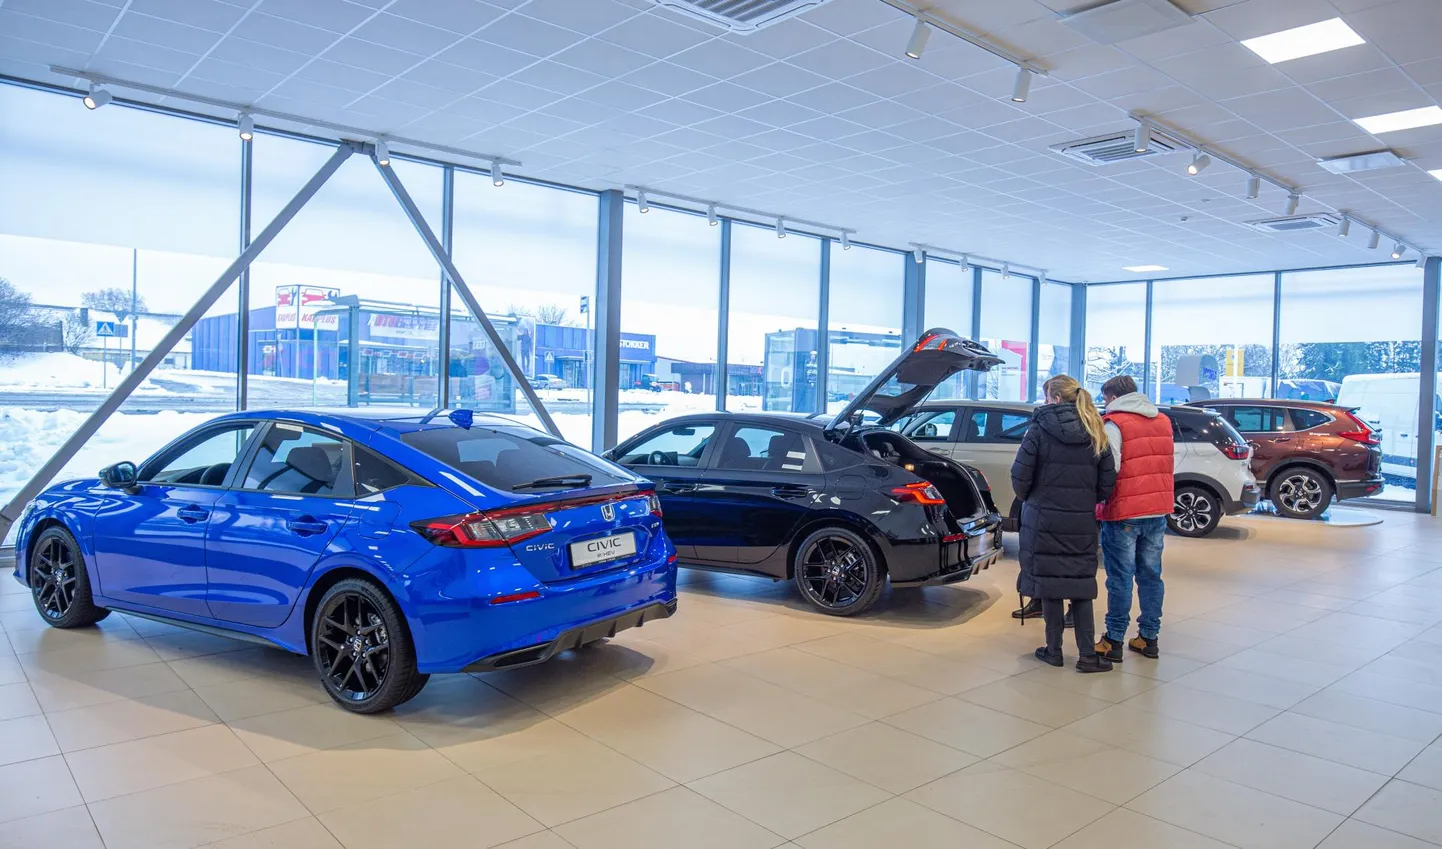 В прошлом году три автосалона в Вильянди увеличили свои продажи, и одним из них стал LX Motors, куда поступили долгожданные новые модели.